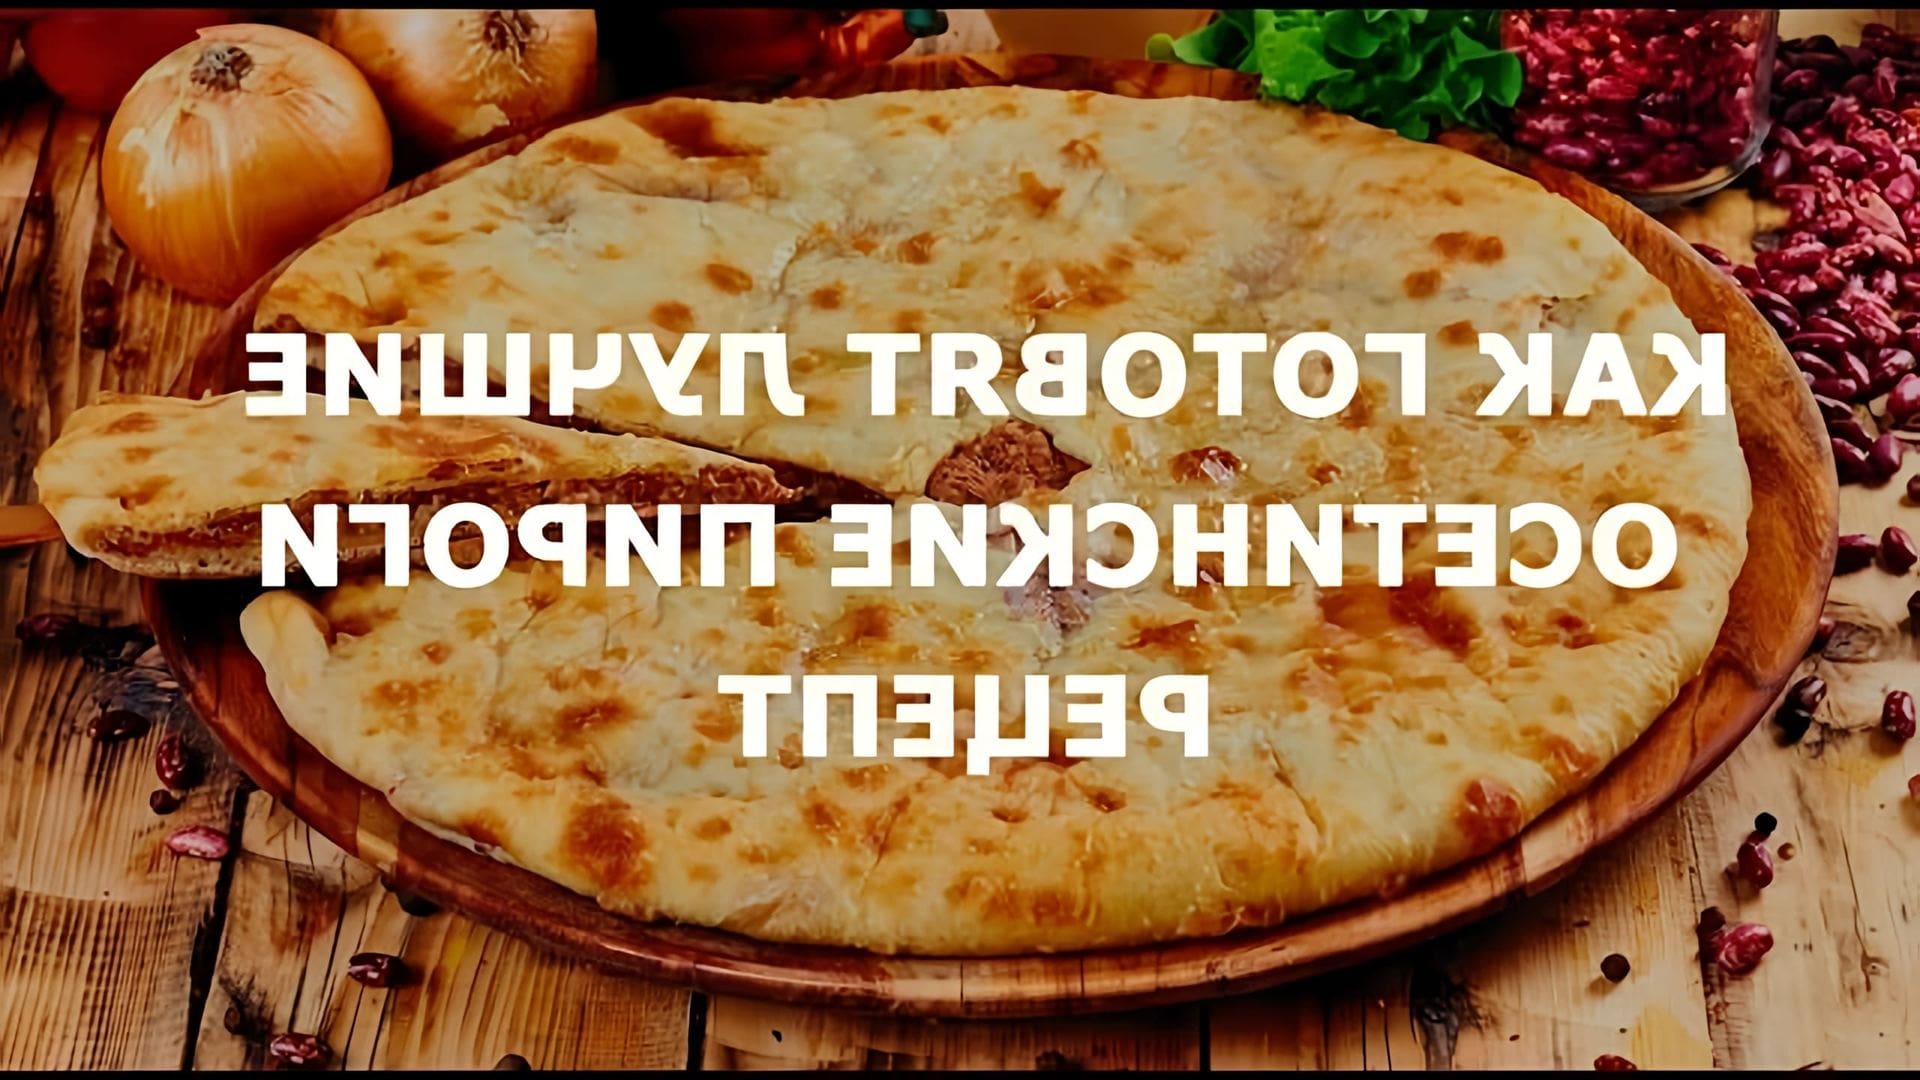 Осетинские пироги - одно из основных блюд традиционной осетинской кухни, которое пользуется популярностью во всем мире